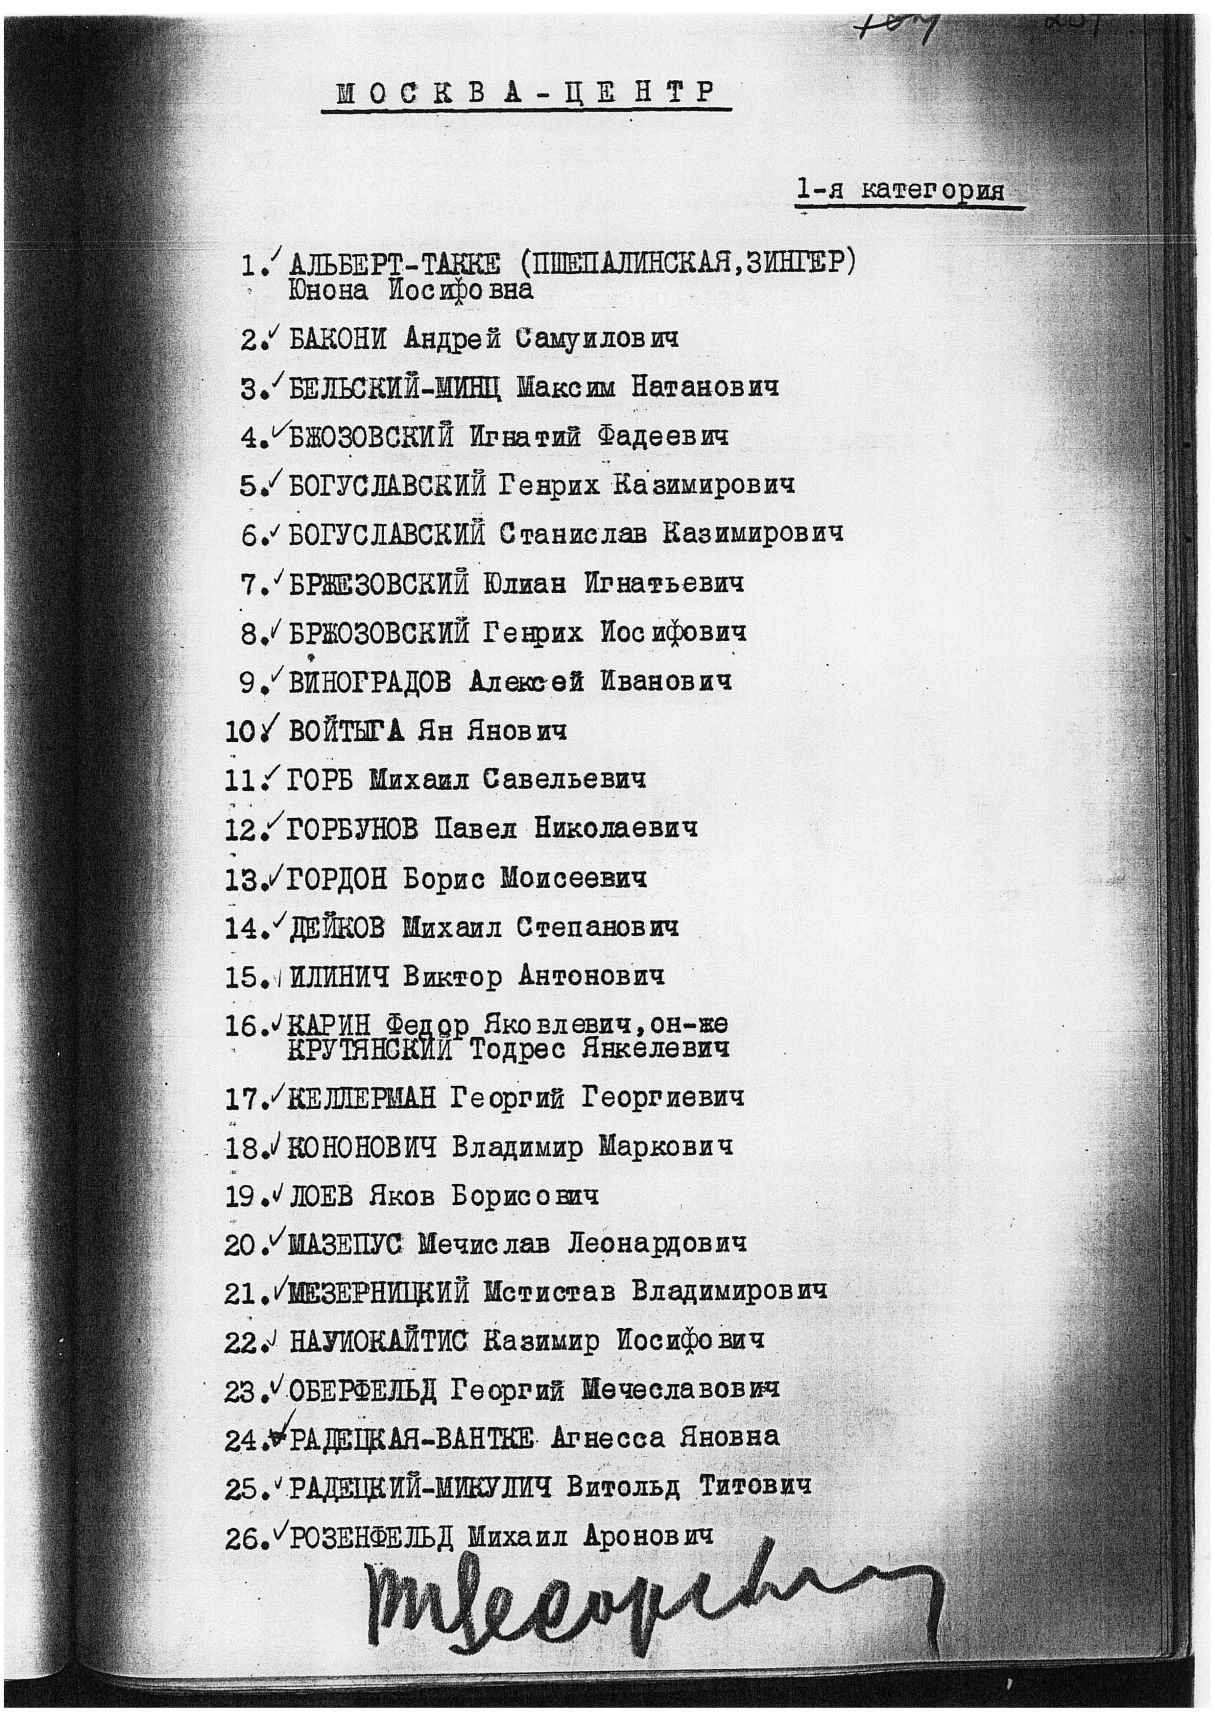 Сталинский расстрельный список (подпись В. Е. Цесарского)